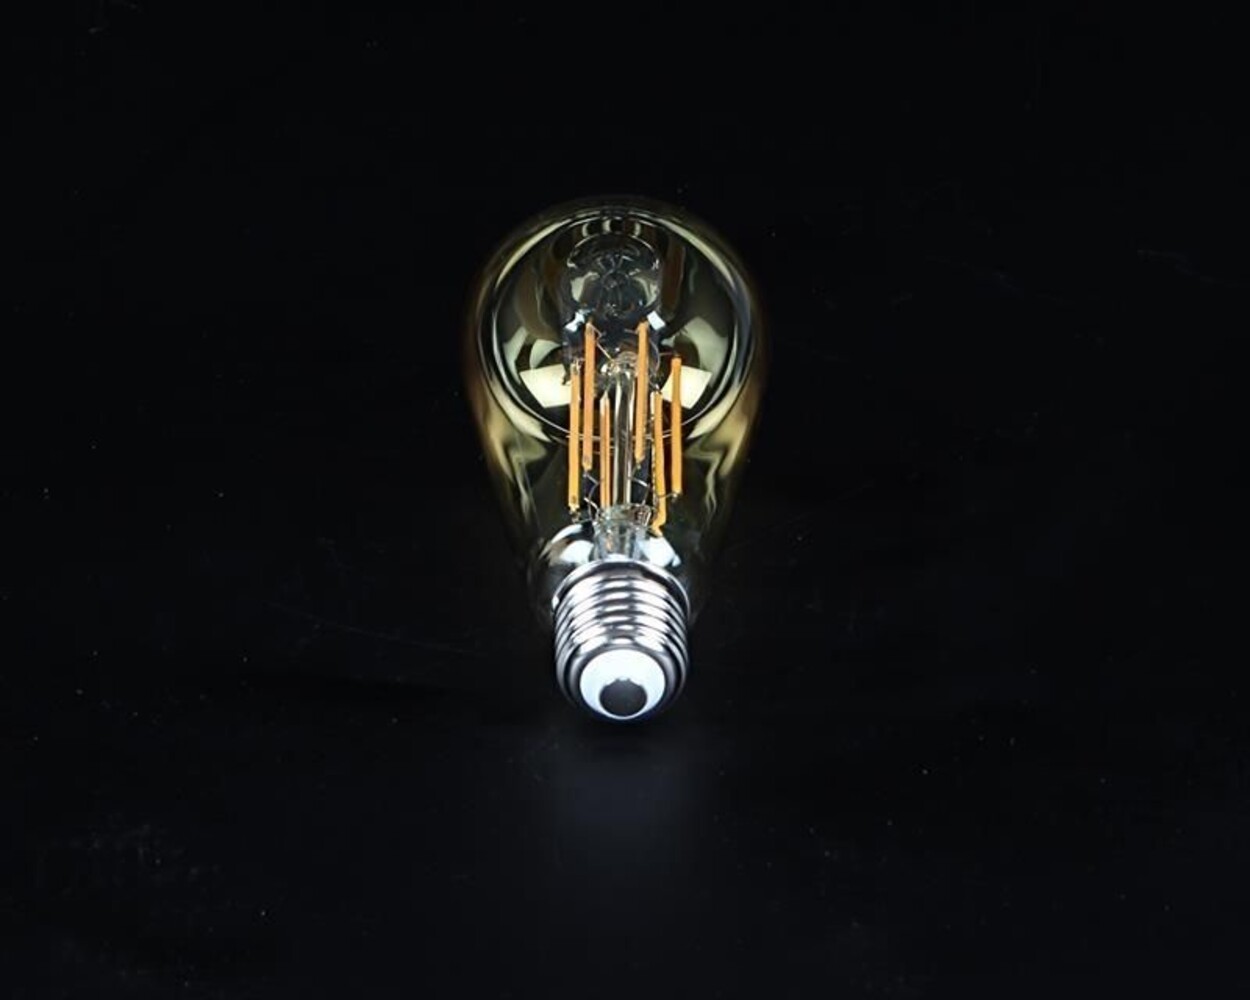 Exquisites Filament Leuchtmittel von der Marke Deko-Light, die eine beruhigende Beleuchtung liefert